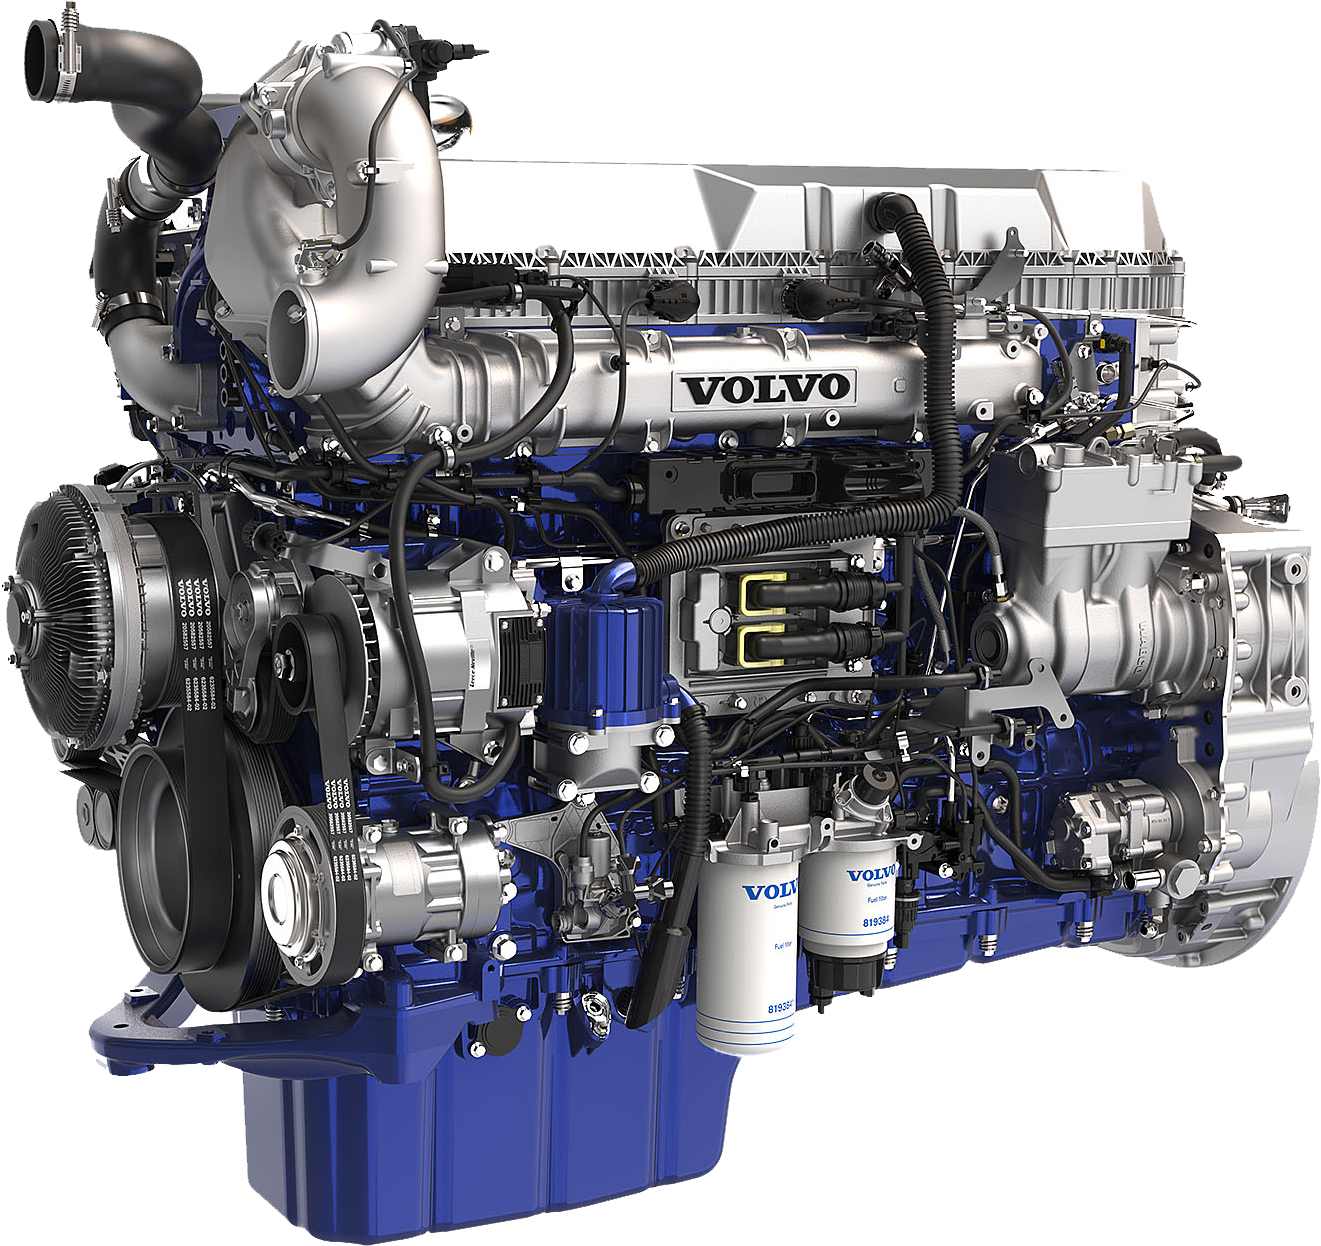 Дизель дизельный. Volvo d13 engine. D13 Volvo Power. Мотор Volvo FH d13. Двигатели Вольво Truck.